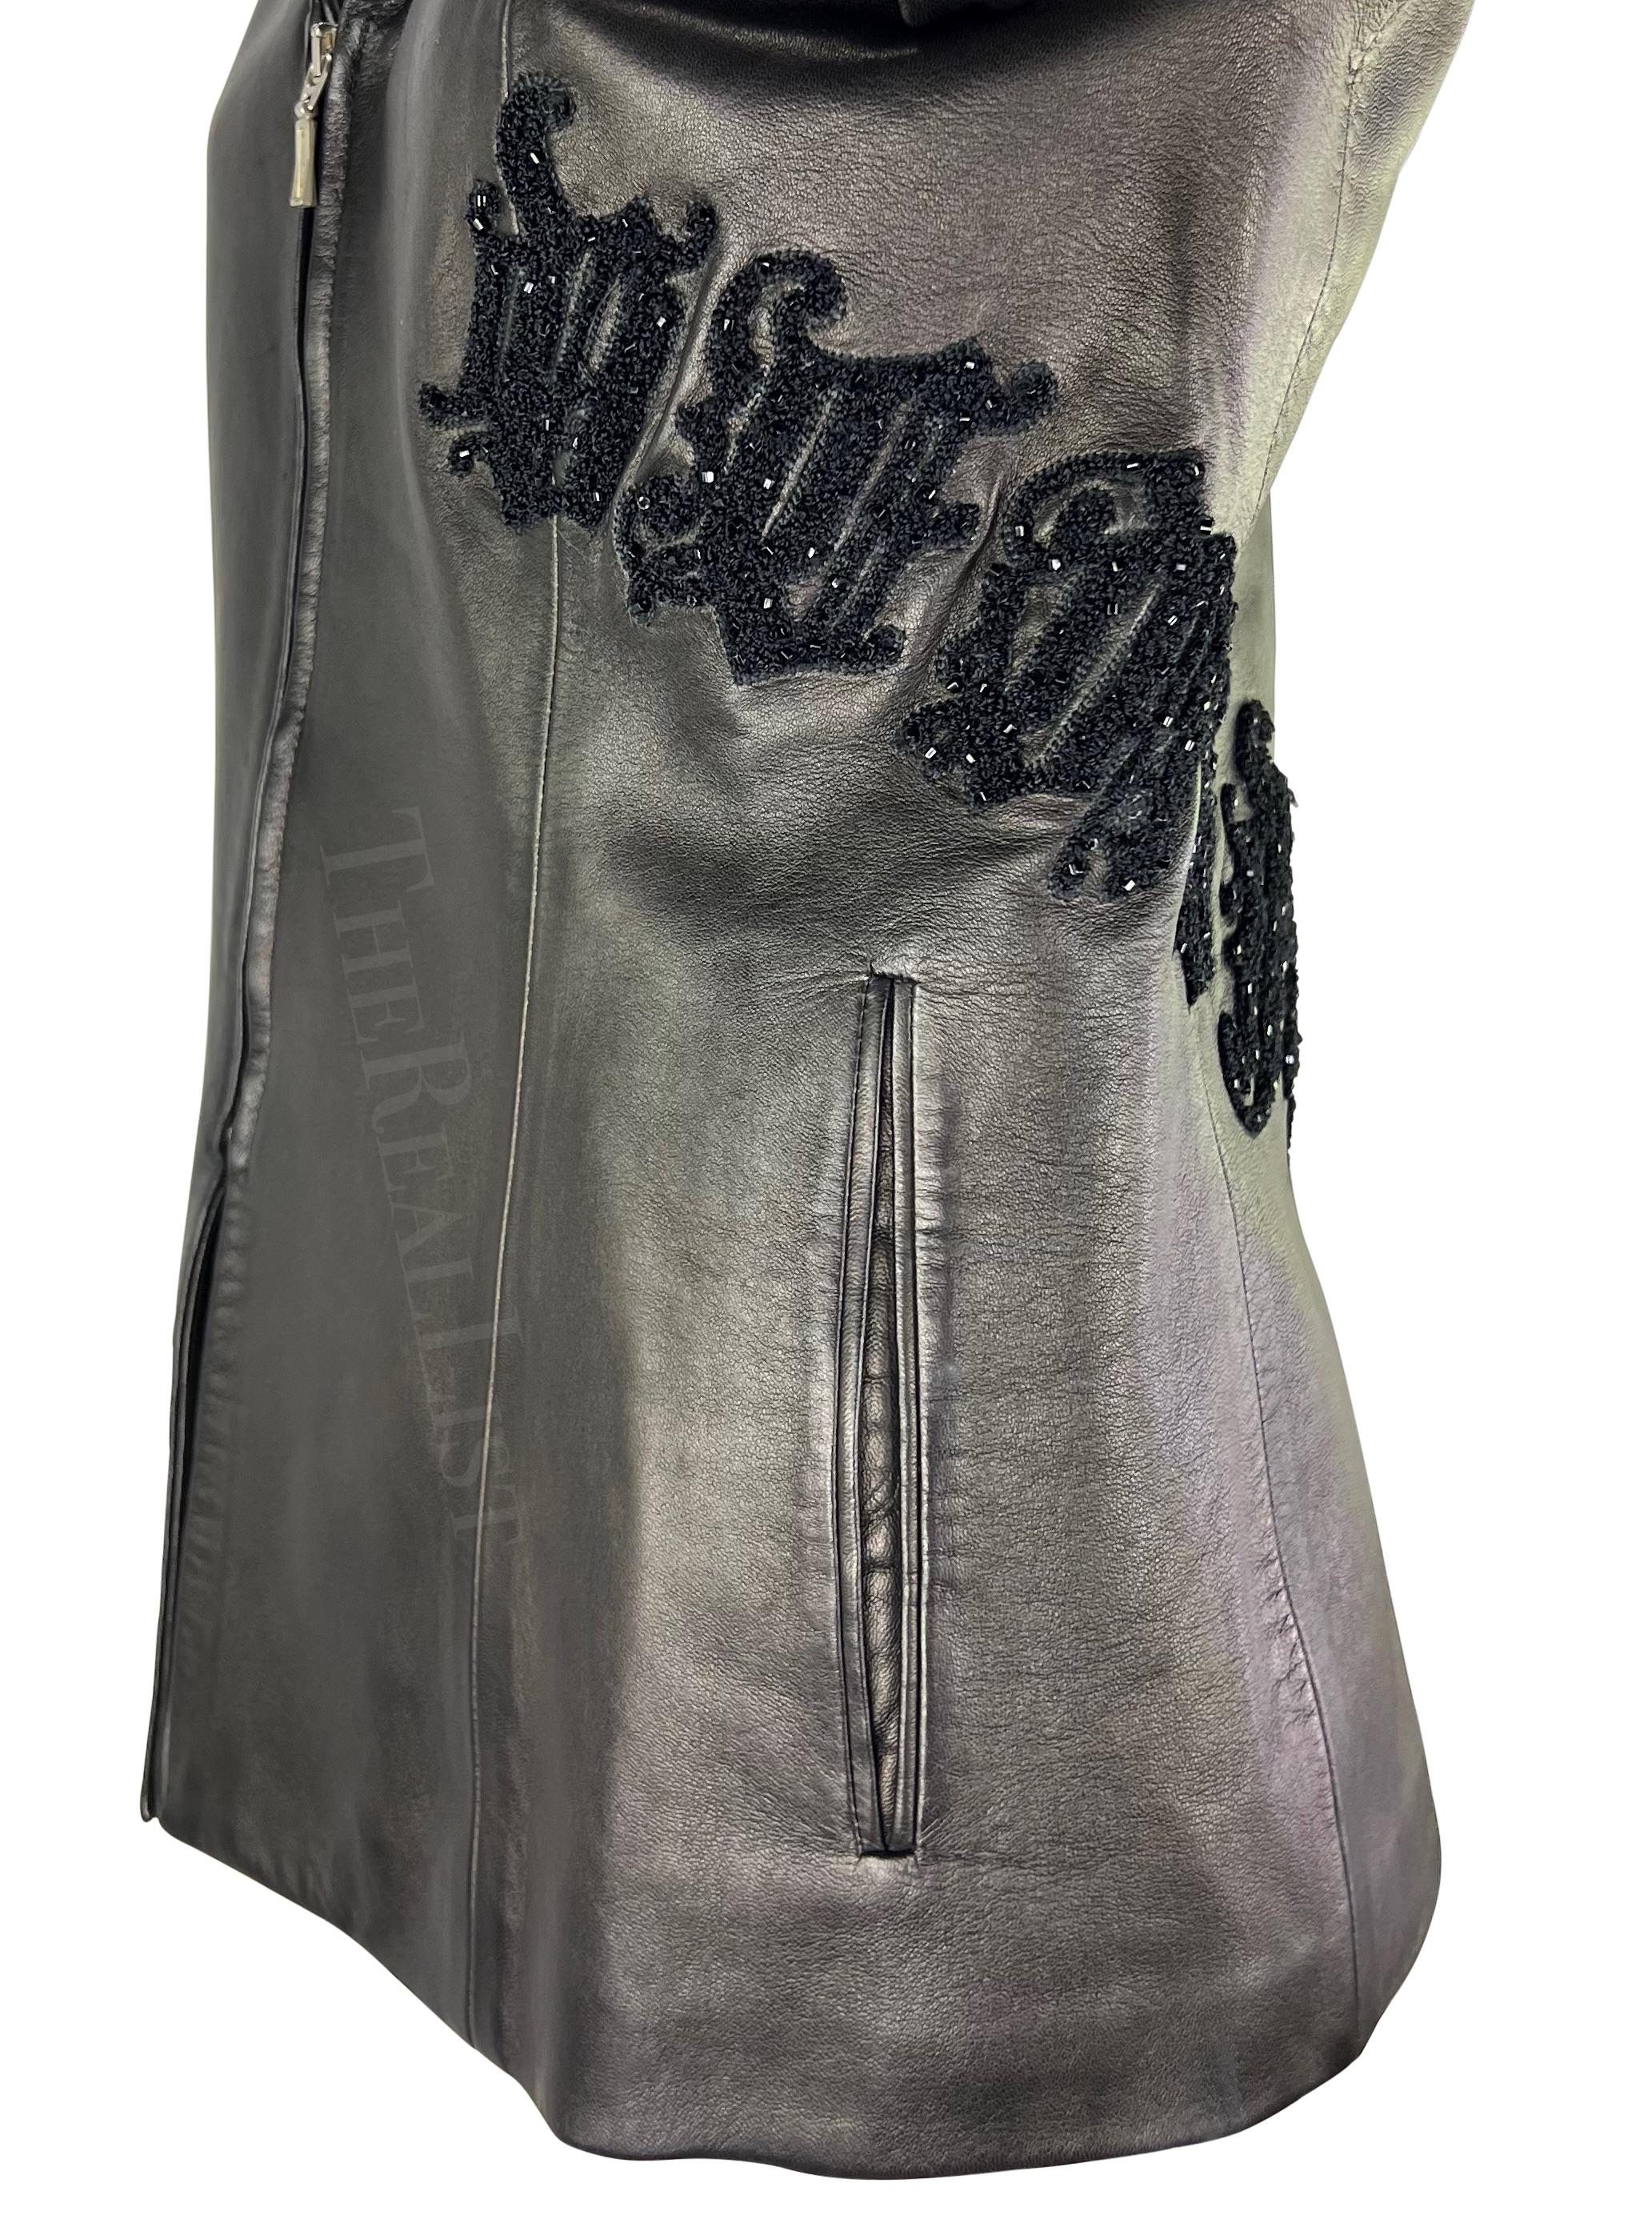 Présentation d'une veste en cuir noire Gianni Versace, dessinée par Donatella Versace. Issue de la collection automne/hiver 1999, cette veste est entièrement en cuir et présente un col rabattu et une fermeture à glissière. La veste est rehaussée